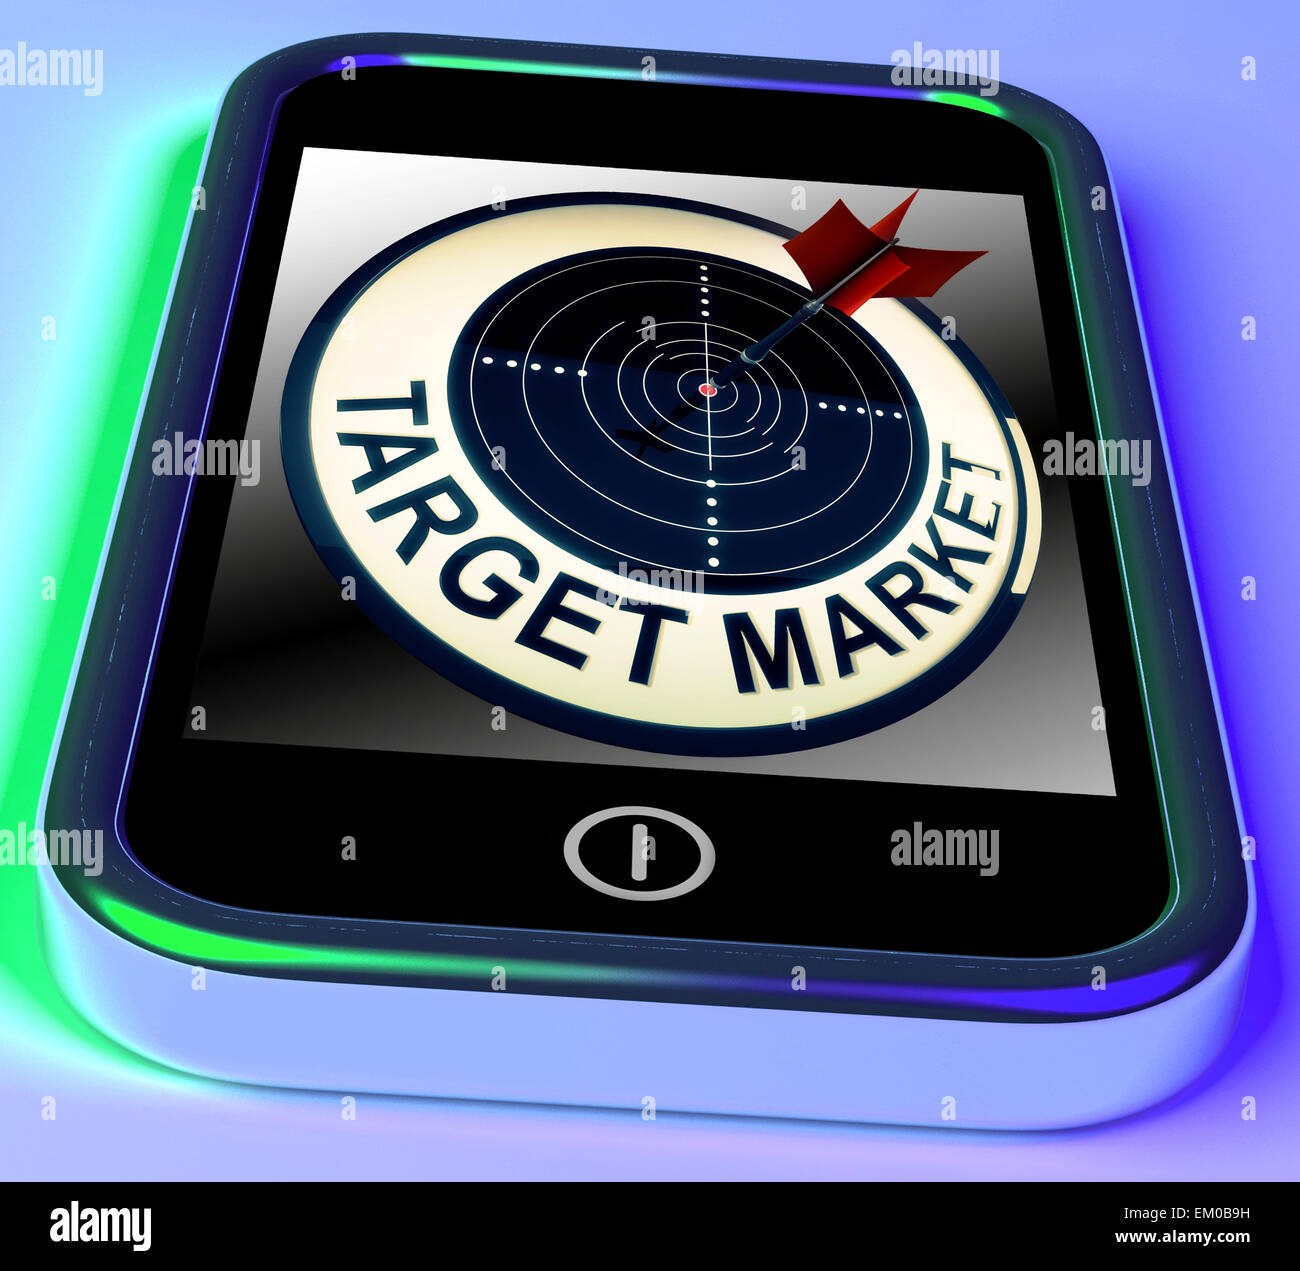 Marché cible sur smartphone affiche les clients ciblés Banque D'Images